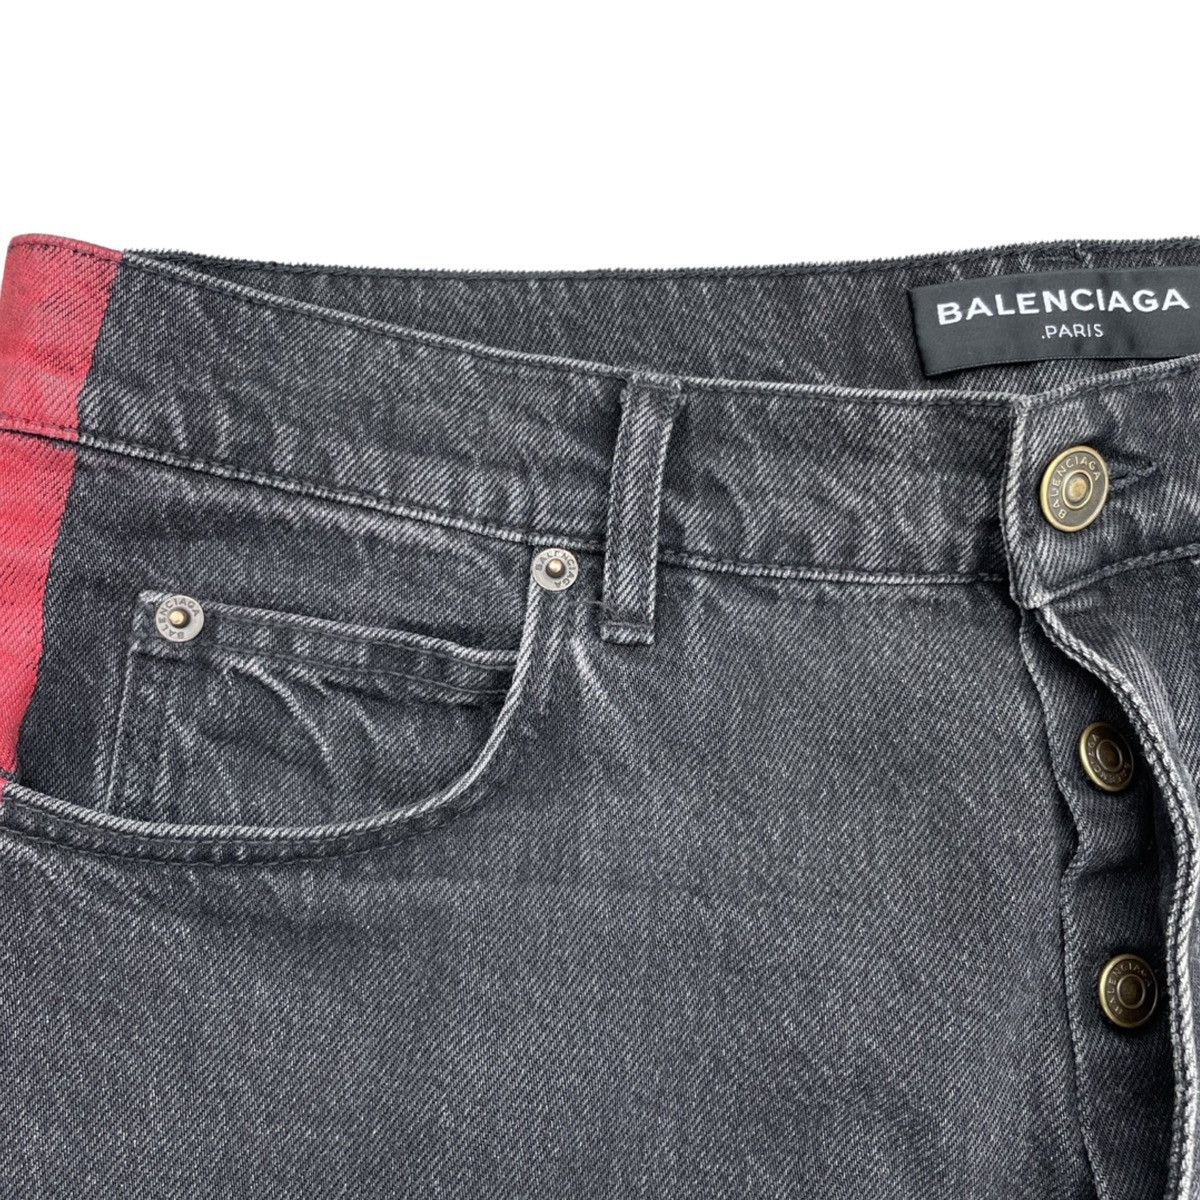 Balenciaga SS17 Red Stripe Jeans Size US 32 / EU 48 - 11 Thumbnail